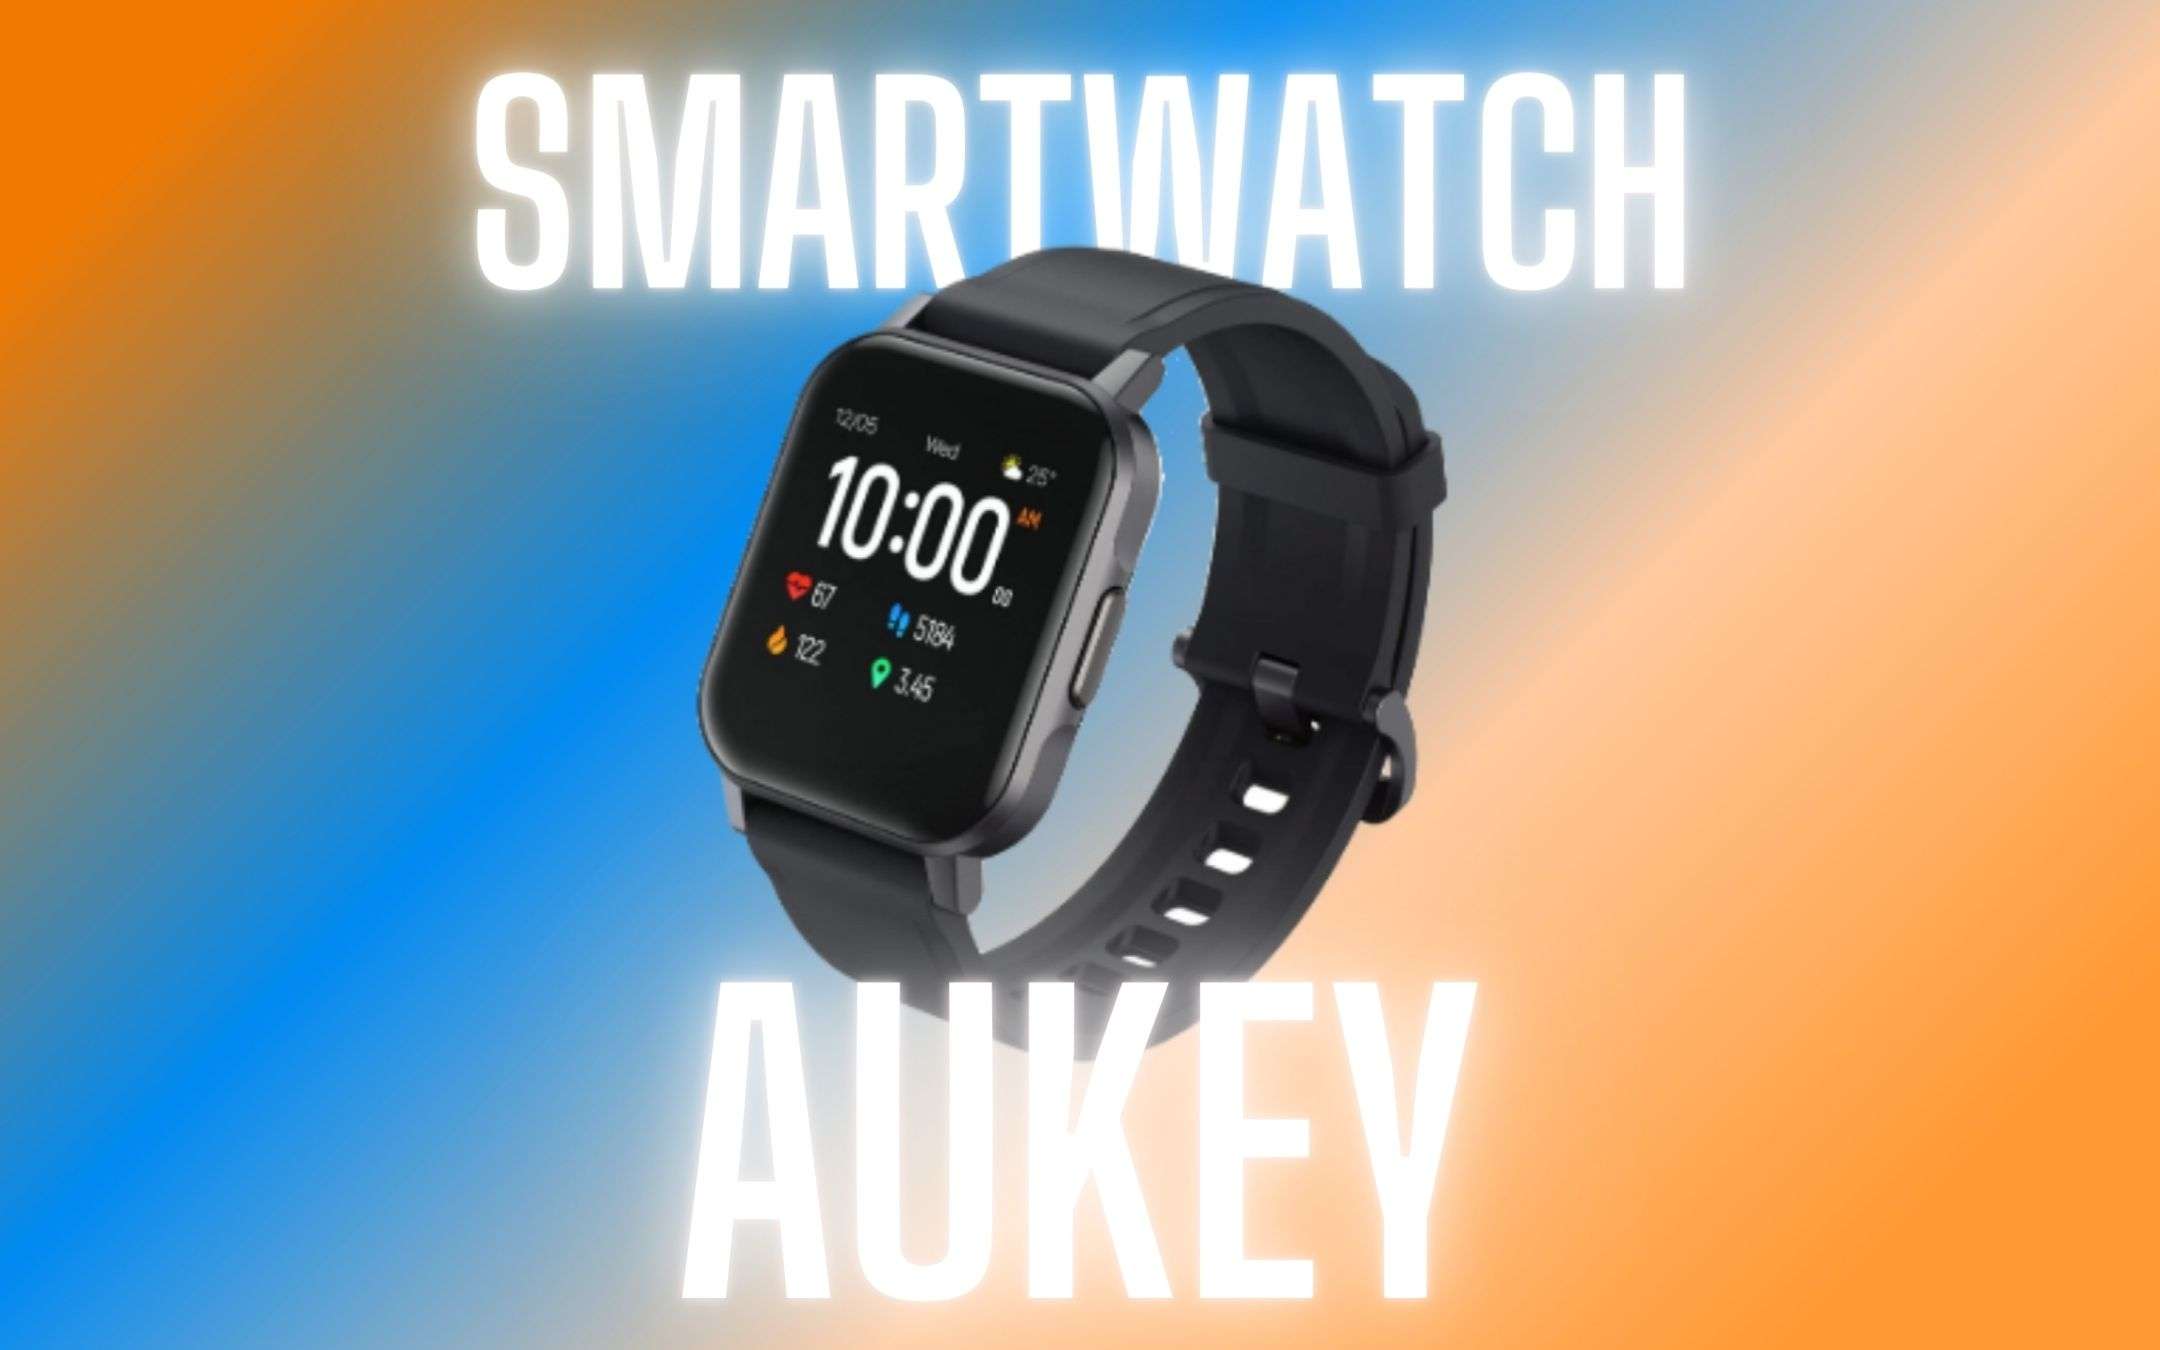 Smartwatch di Aukey a meno di 30€ con COUPON